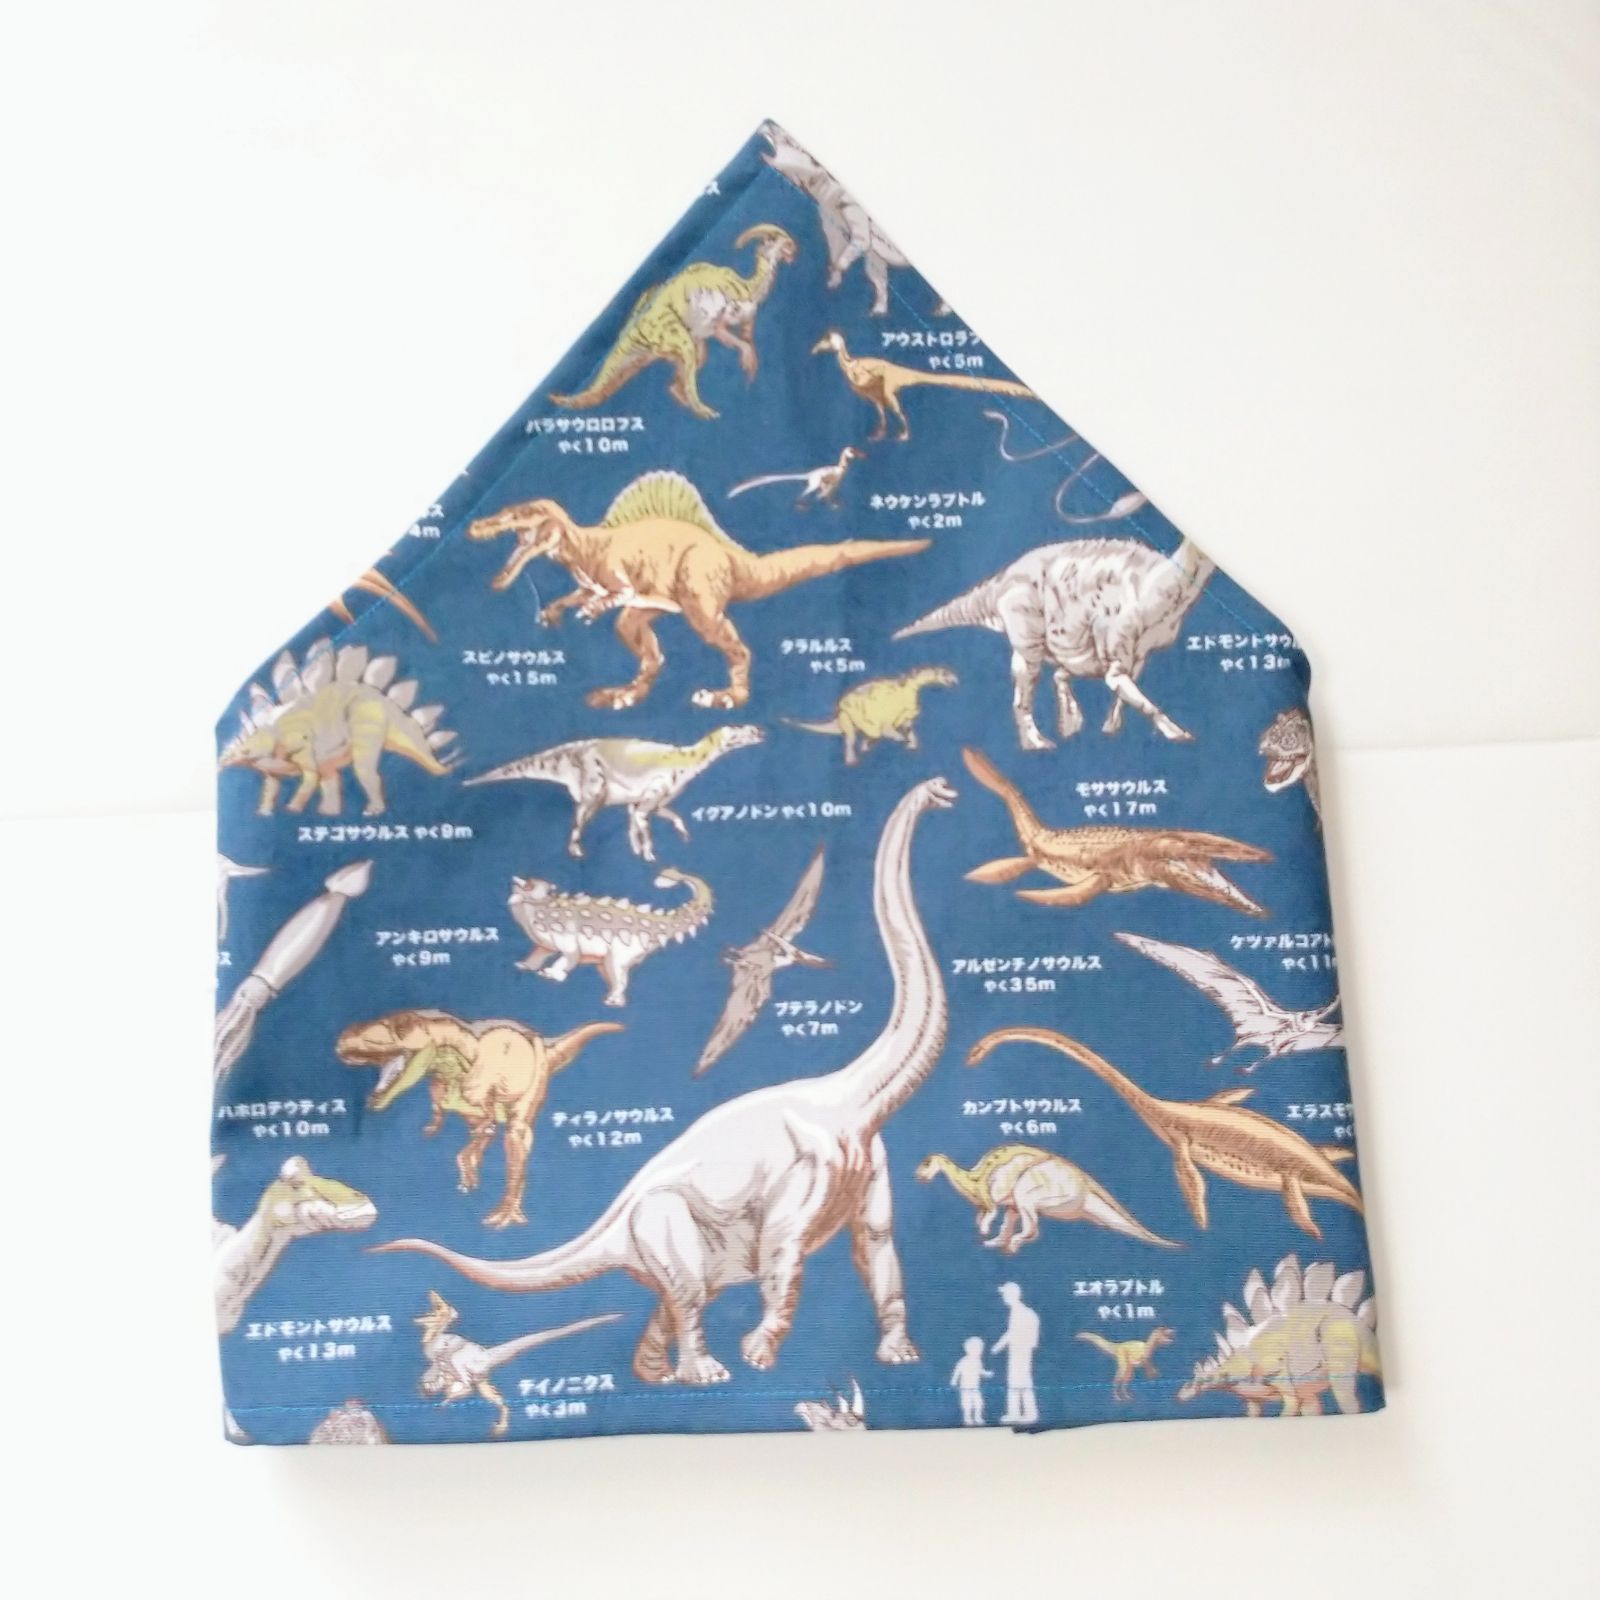 エプロン100-120 三角巾付き 発見 探検 恐竜大陸(ネイビー) N1234140